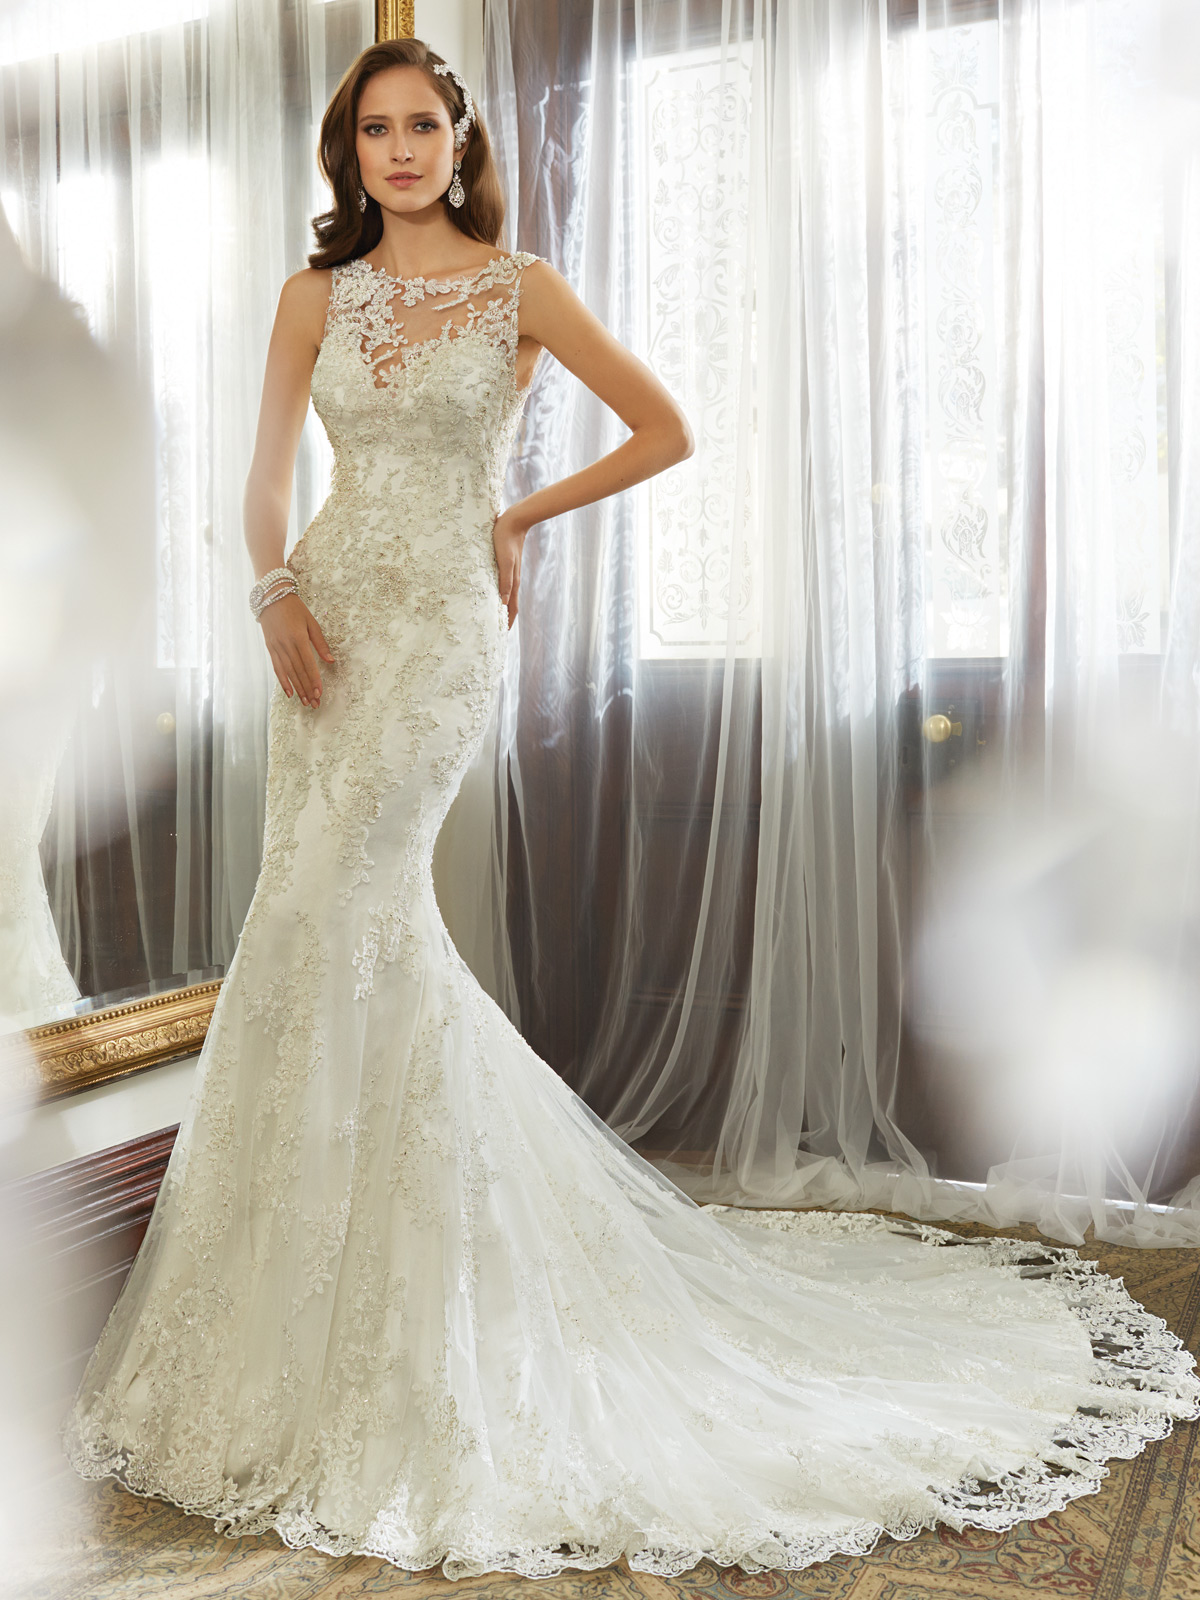 Wedding Dress - Sophia Tolli SPRING 2015 Collection - Y11557 Kea ...